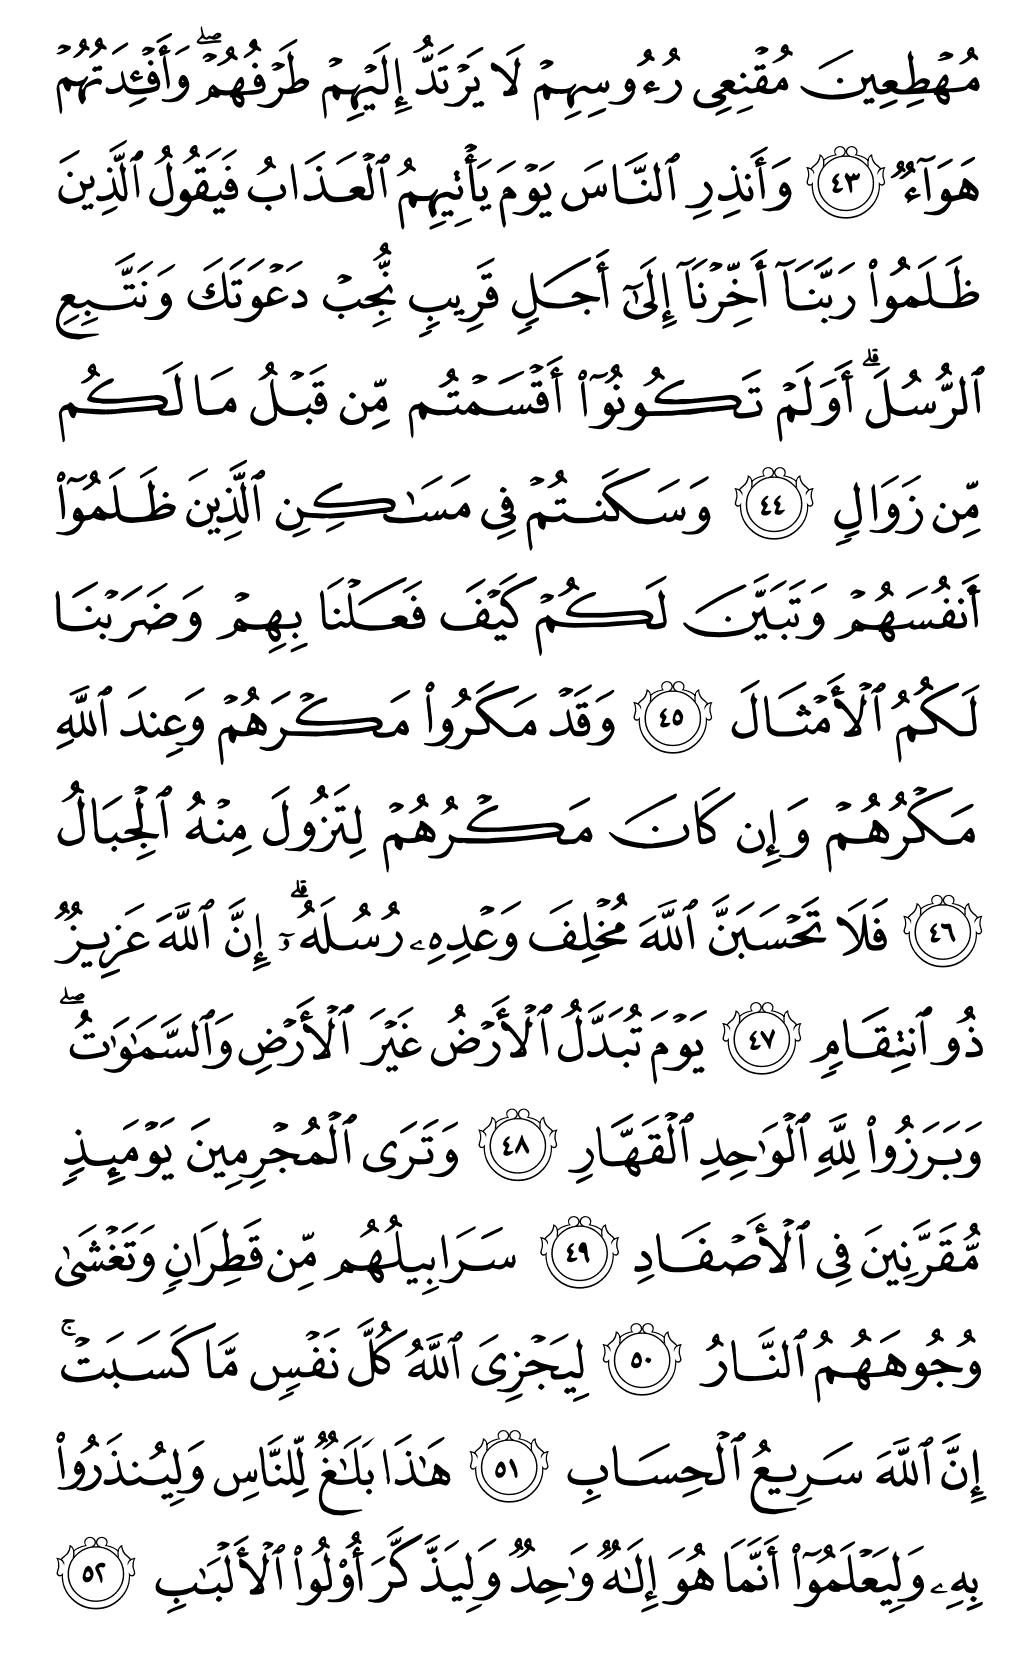 الصفحة رقم 261 من القرآن الكريم